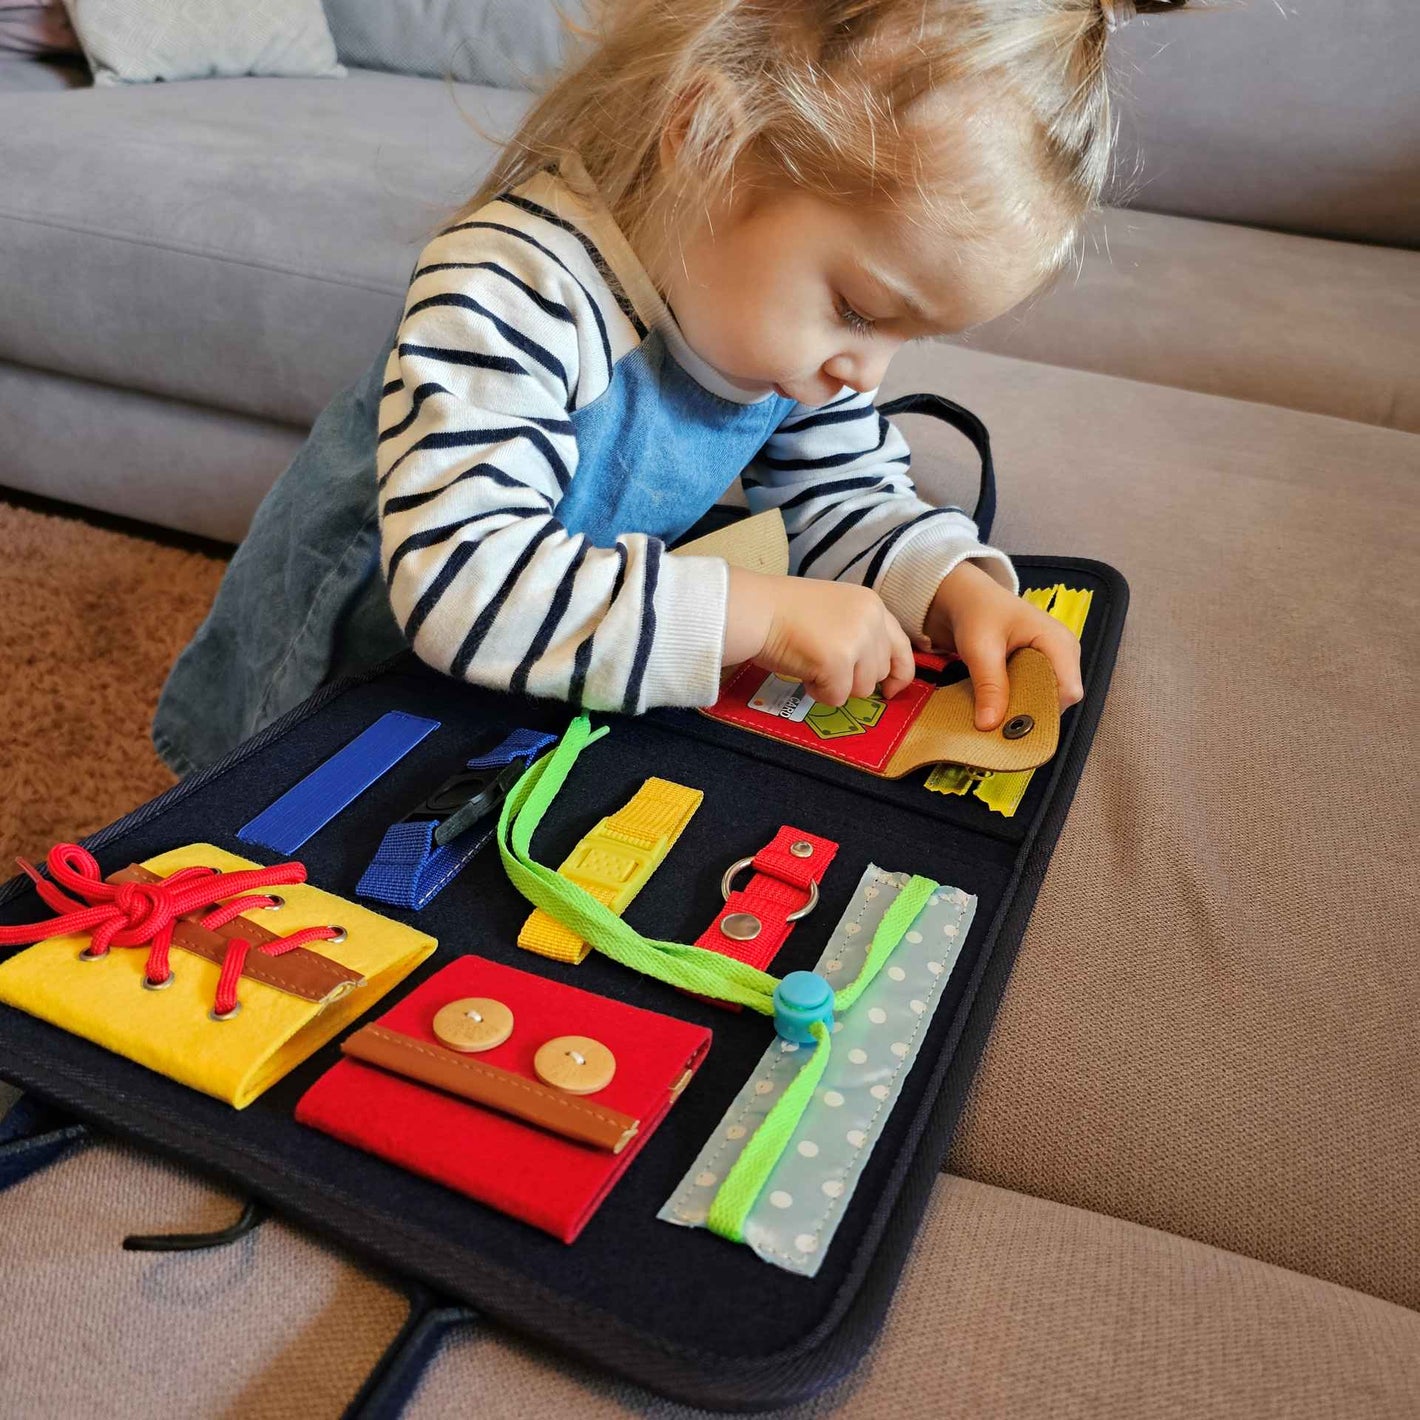 Ein Kind spielt konzentriert mit einem sensorischen Buch, das verschiedene Verschlüsse bietet, um feinmotorische Fähigkeiten zu fördern. Ideal für pädagogische Inhalte, die die Bedeutung von spielerischem Lernen hervorheben.